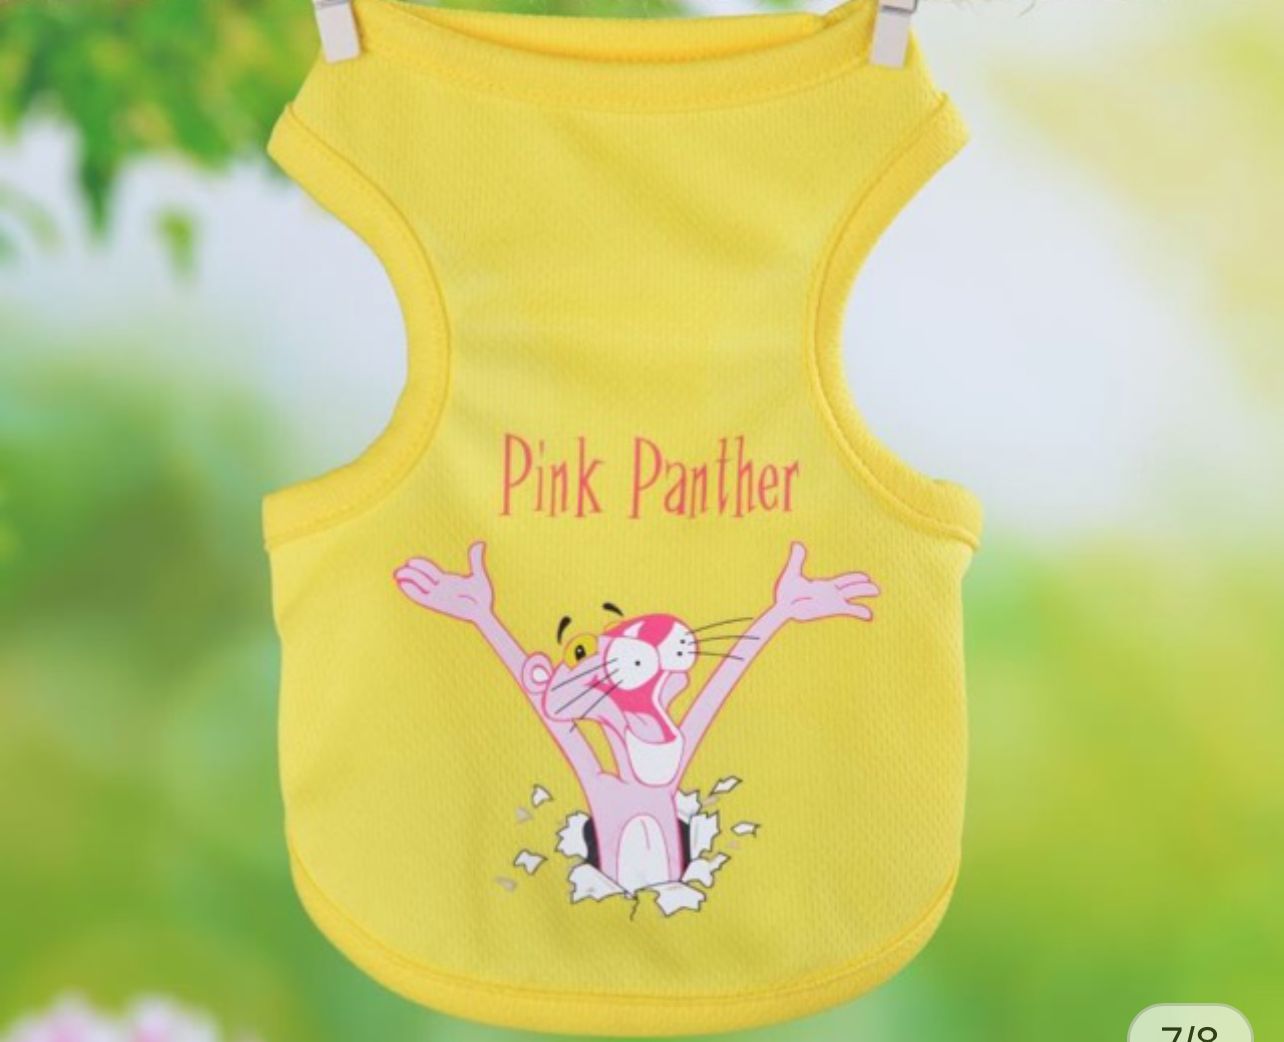 Pink panther pet shirt 🐆